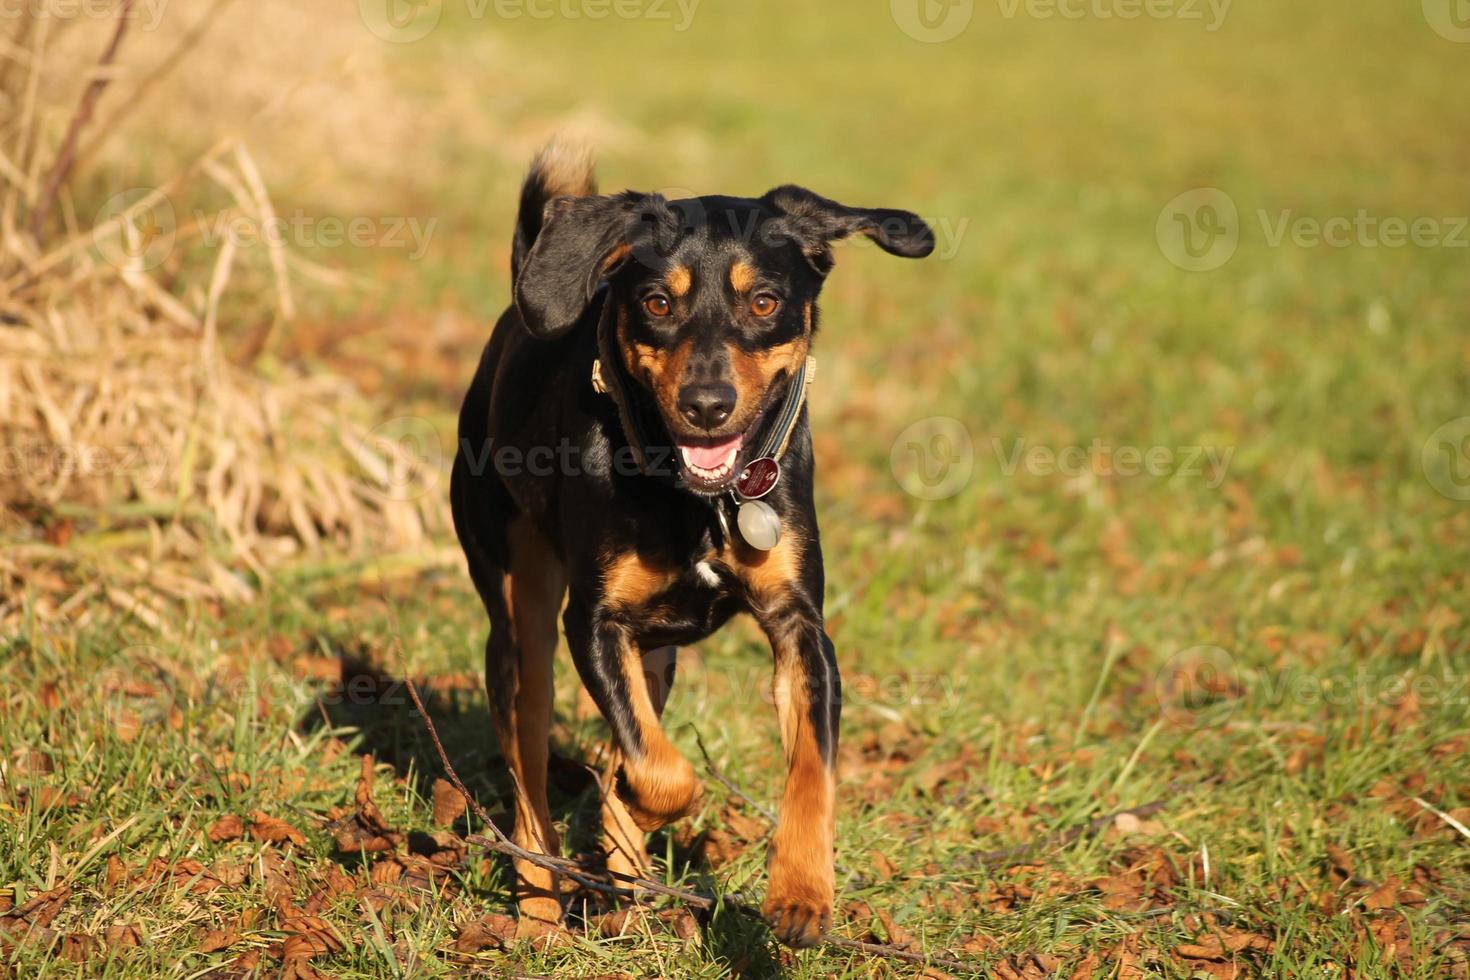 Hund rennt auf Betracher zu. Running dog - front view photo